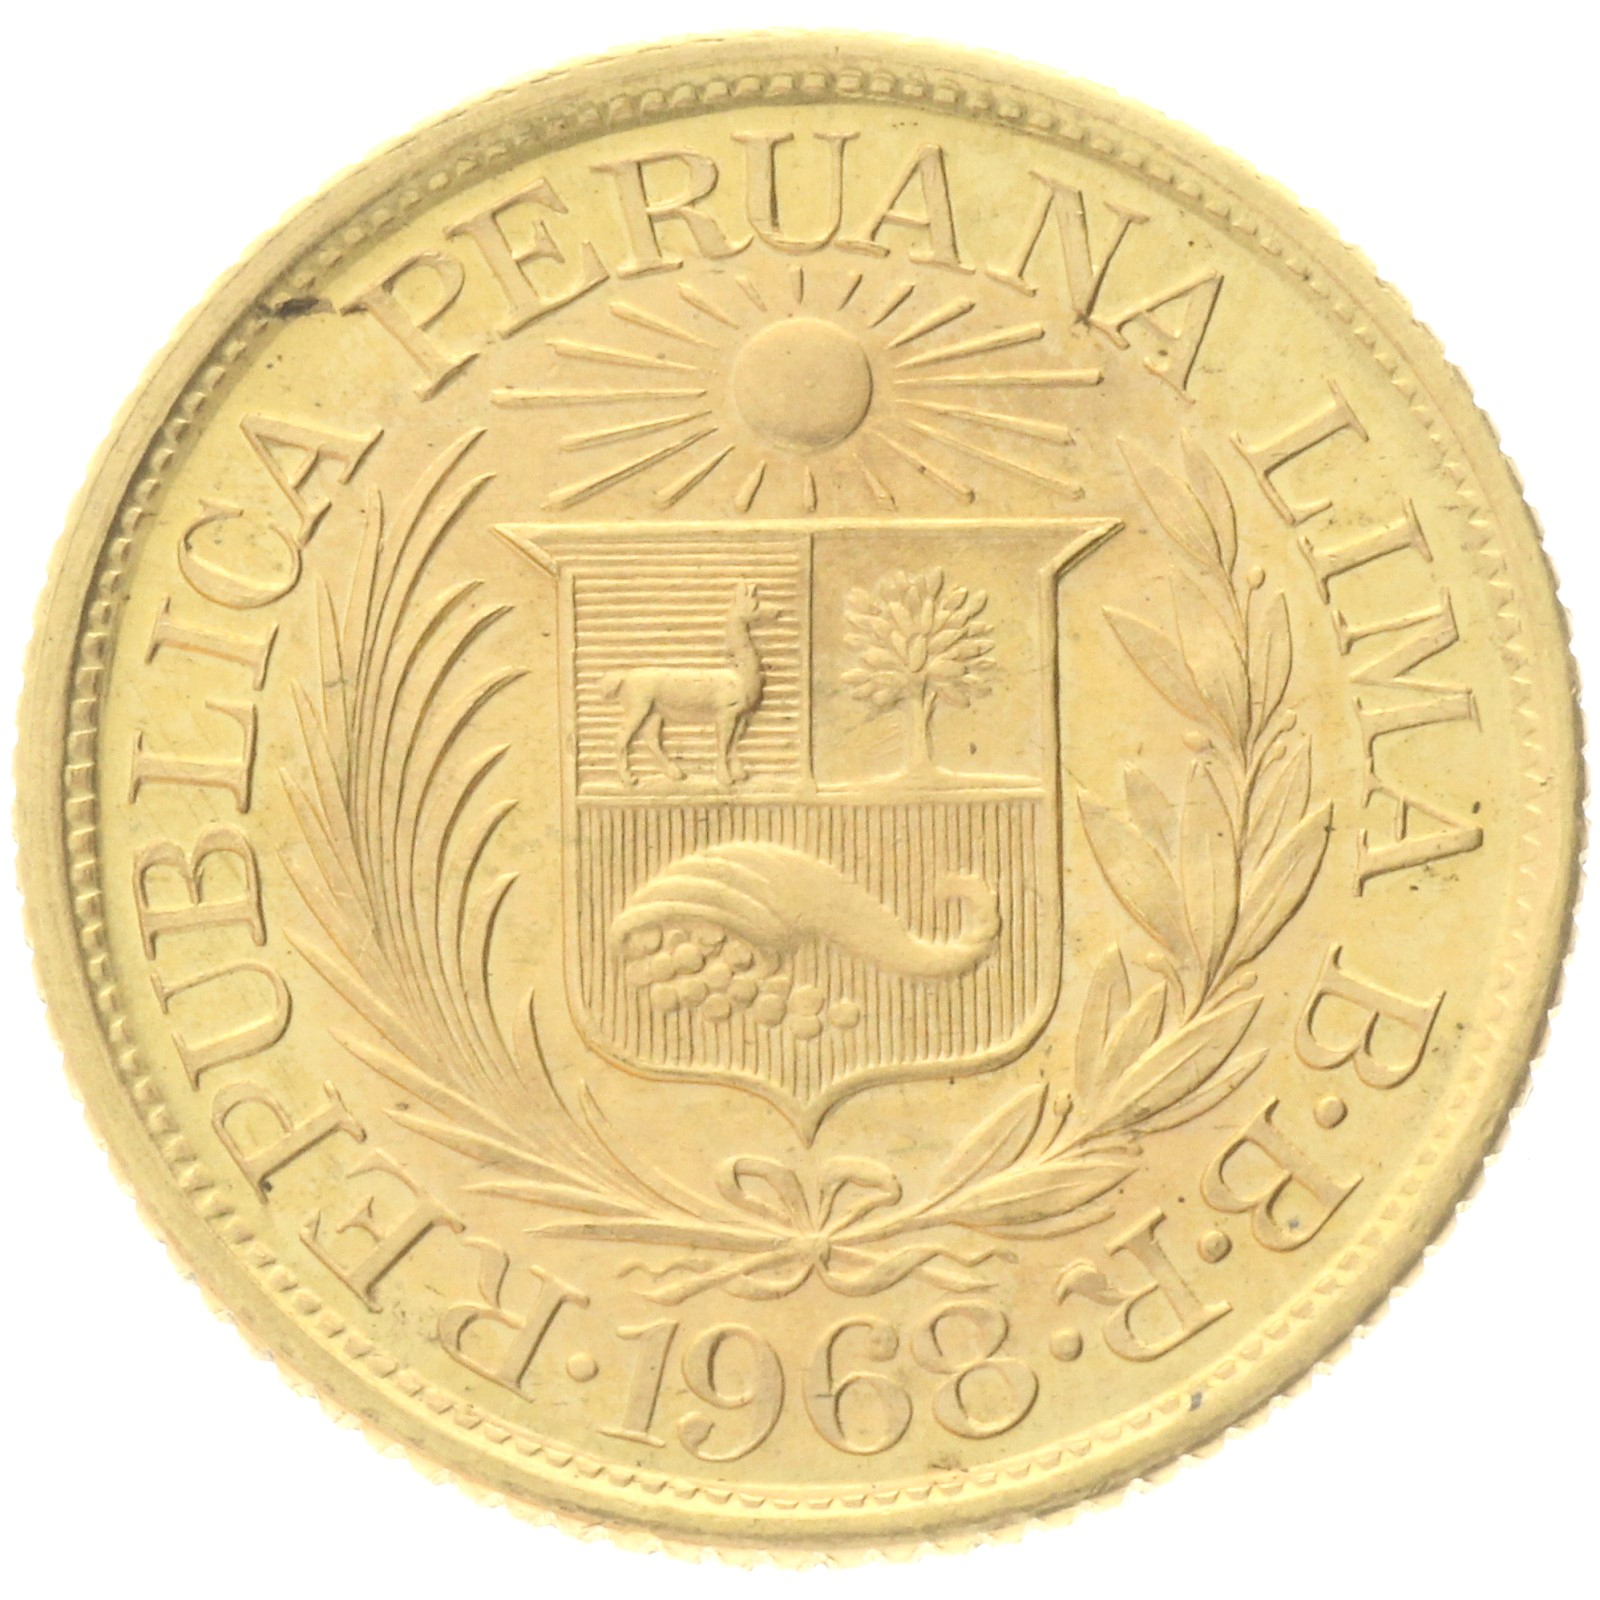 Peru - ½ Libra - 1968